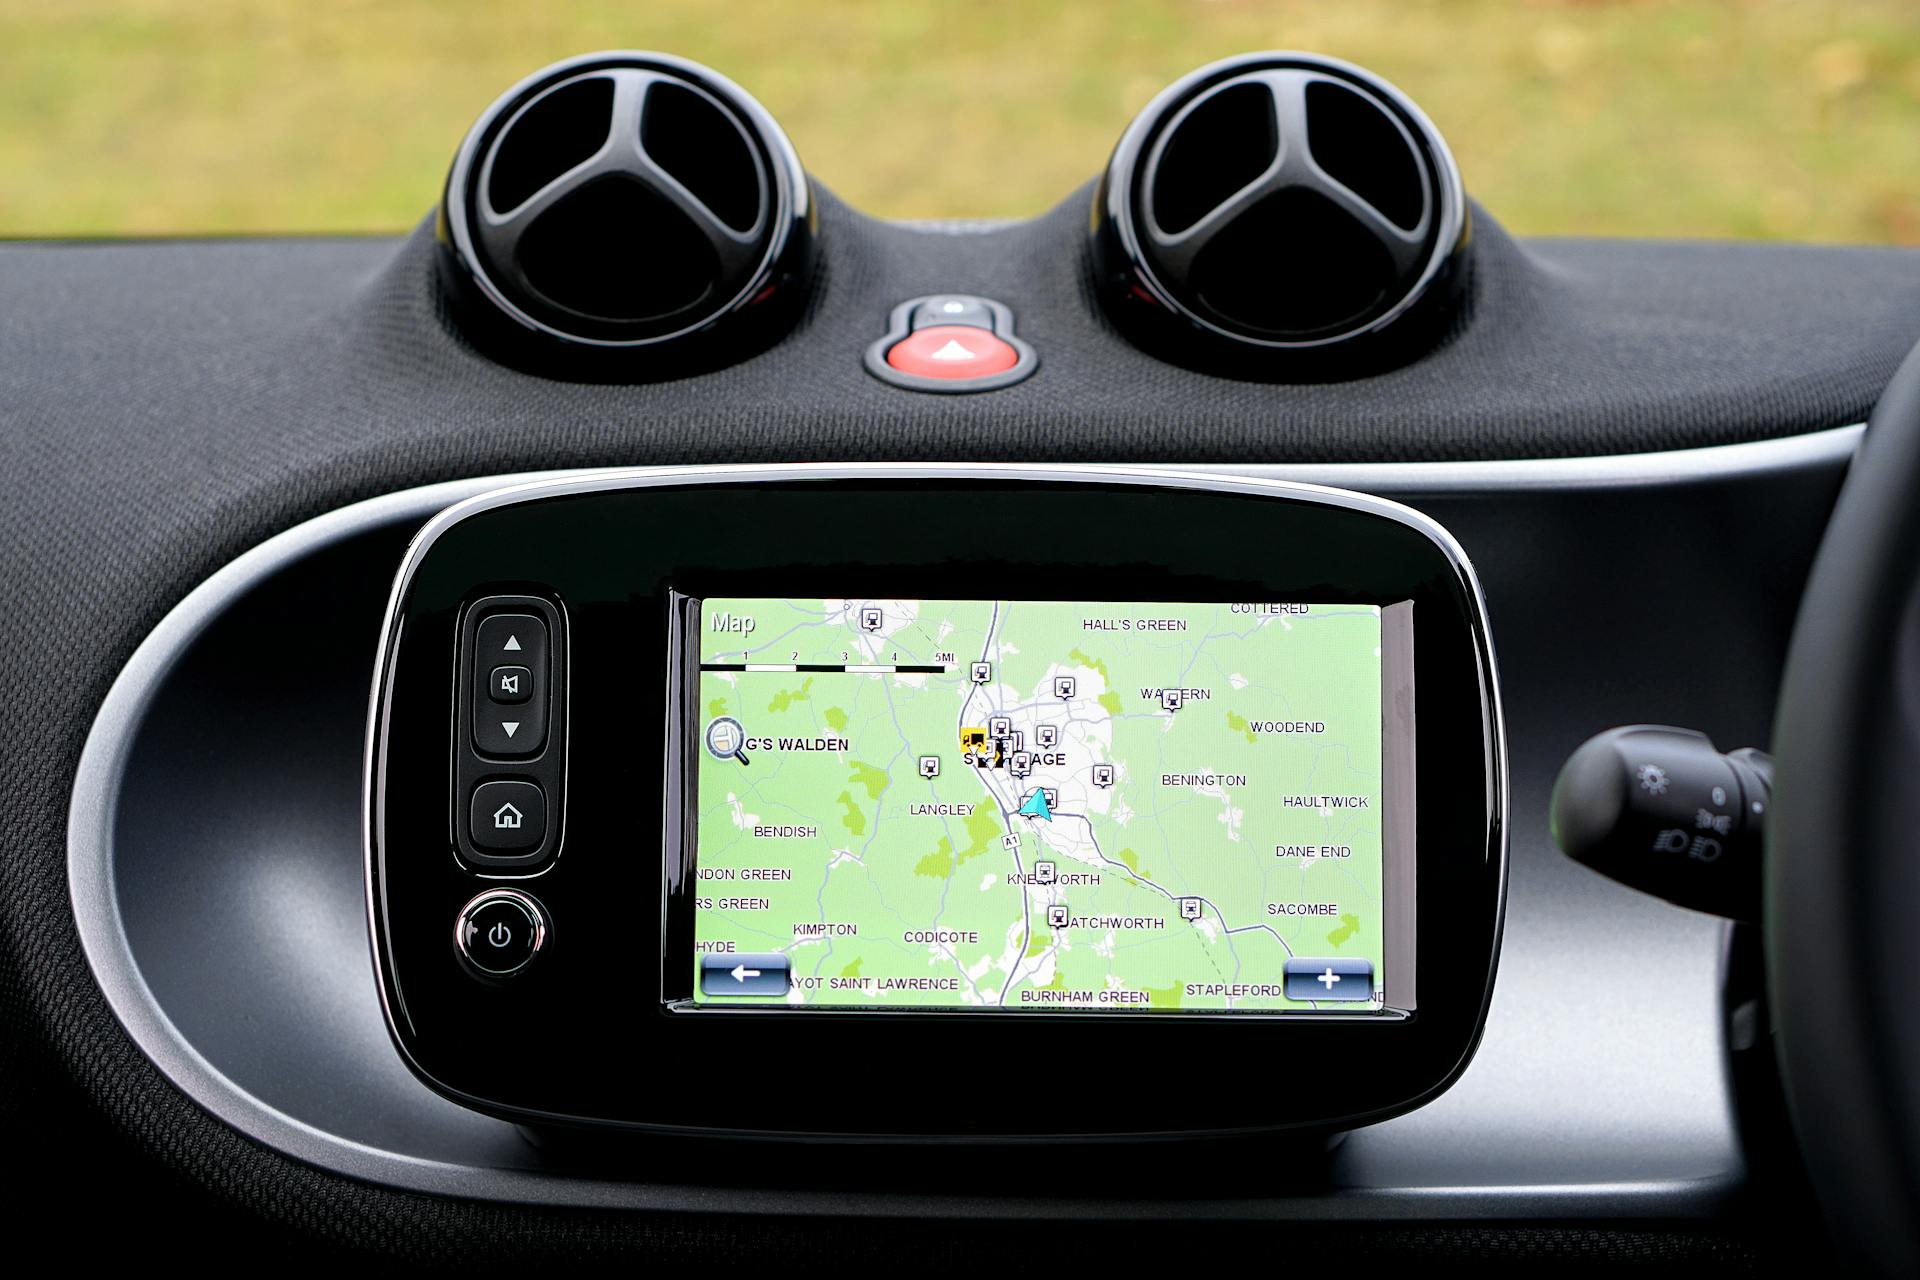 Un moniteur GPS noir allumé | Source : Pexels